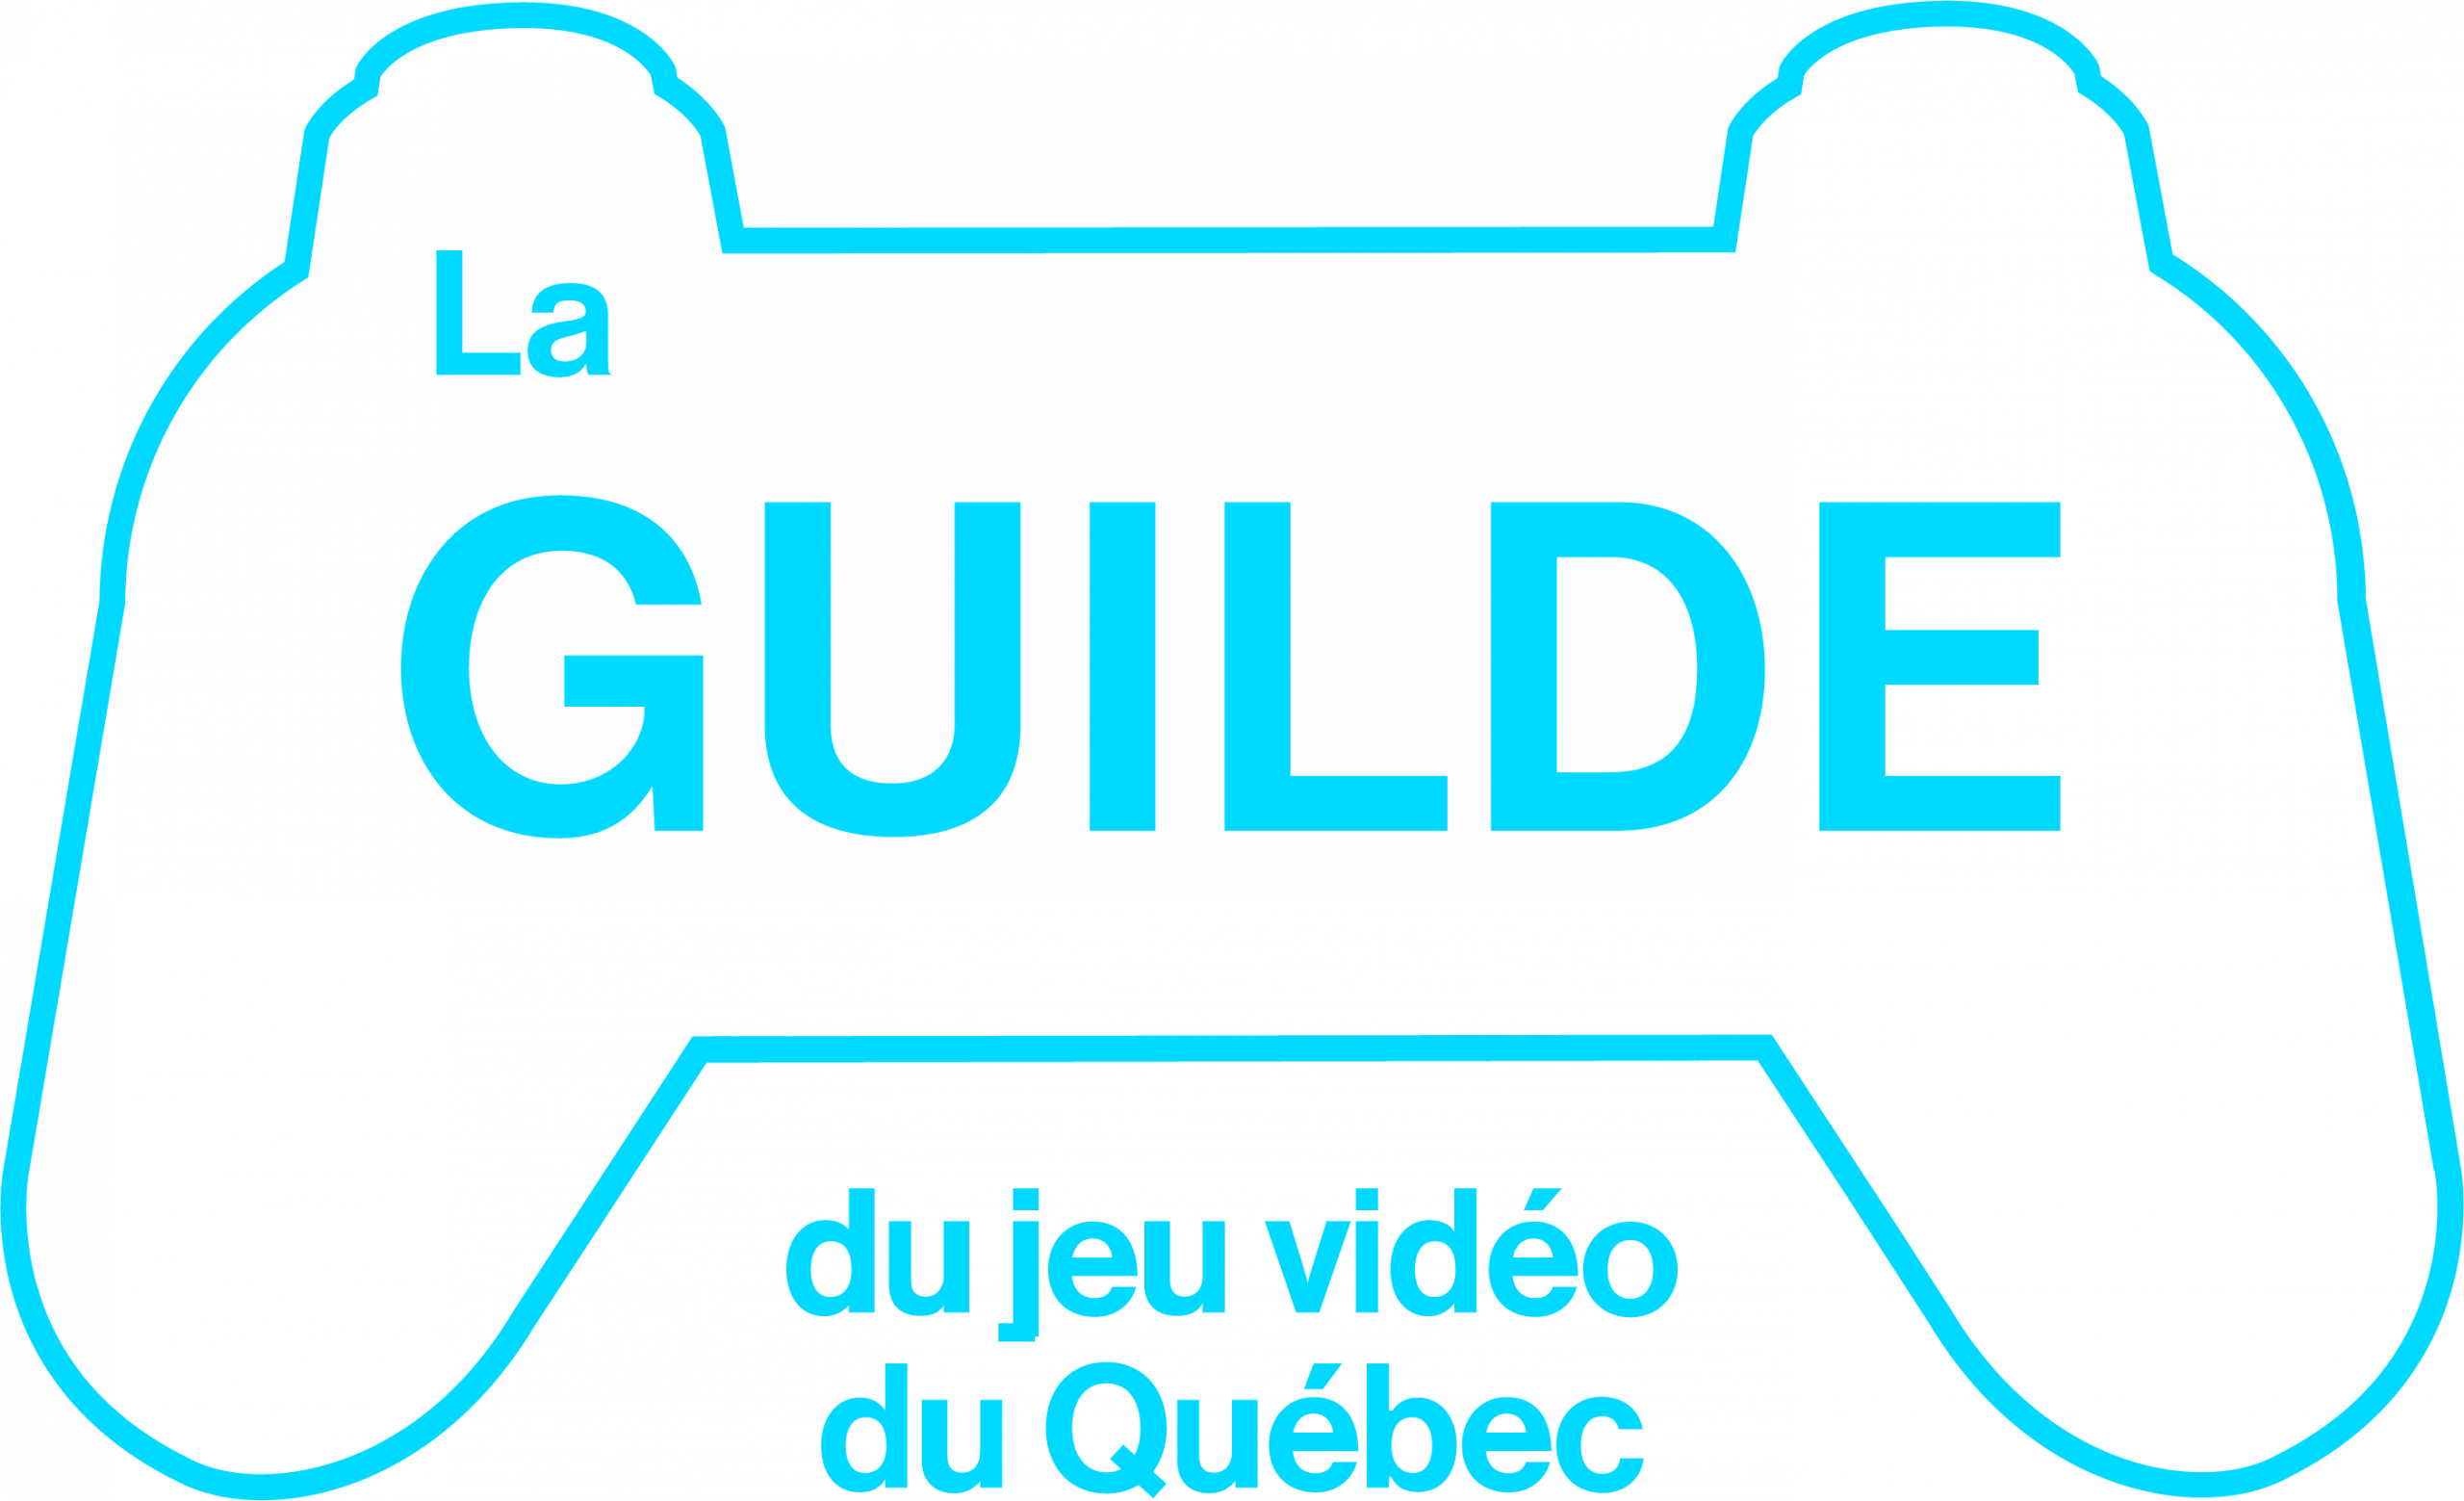 La Guilde du jeu vidéo du Québec